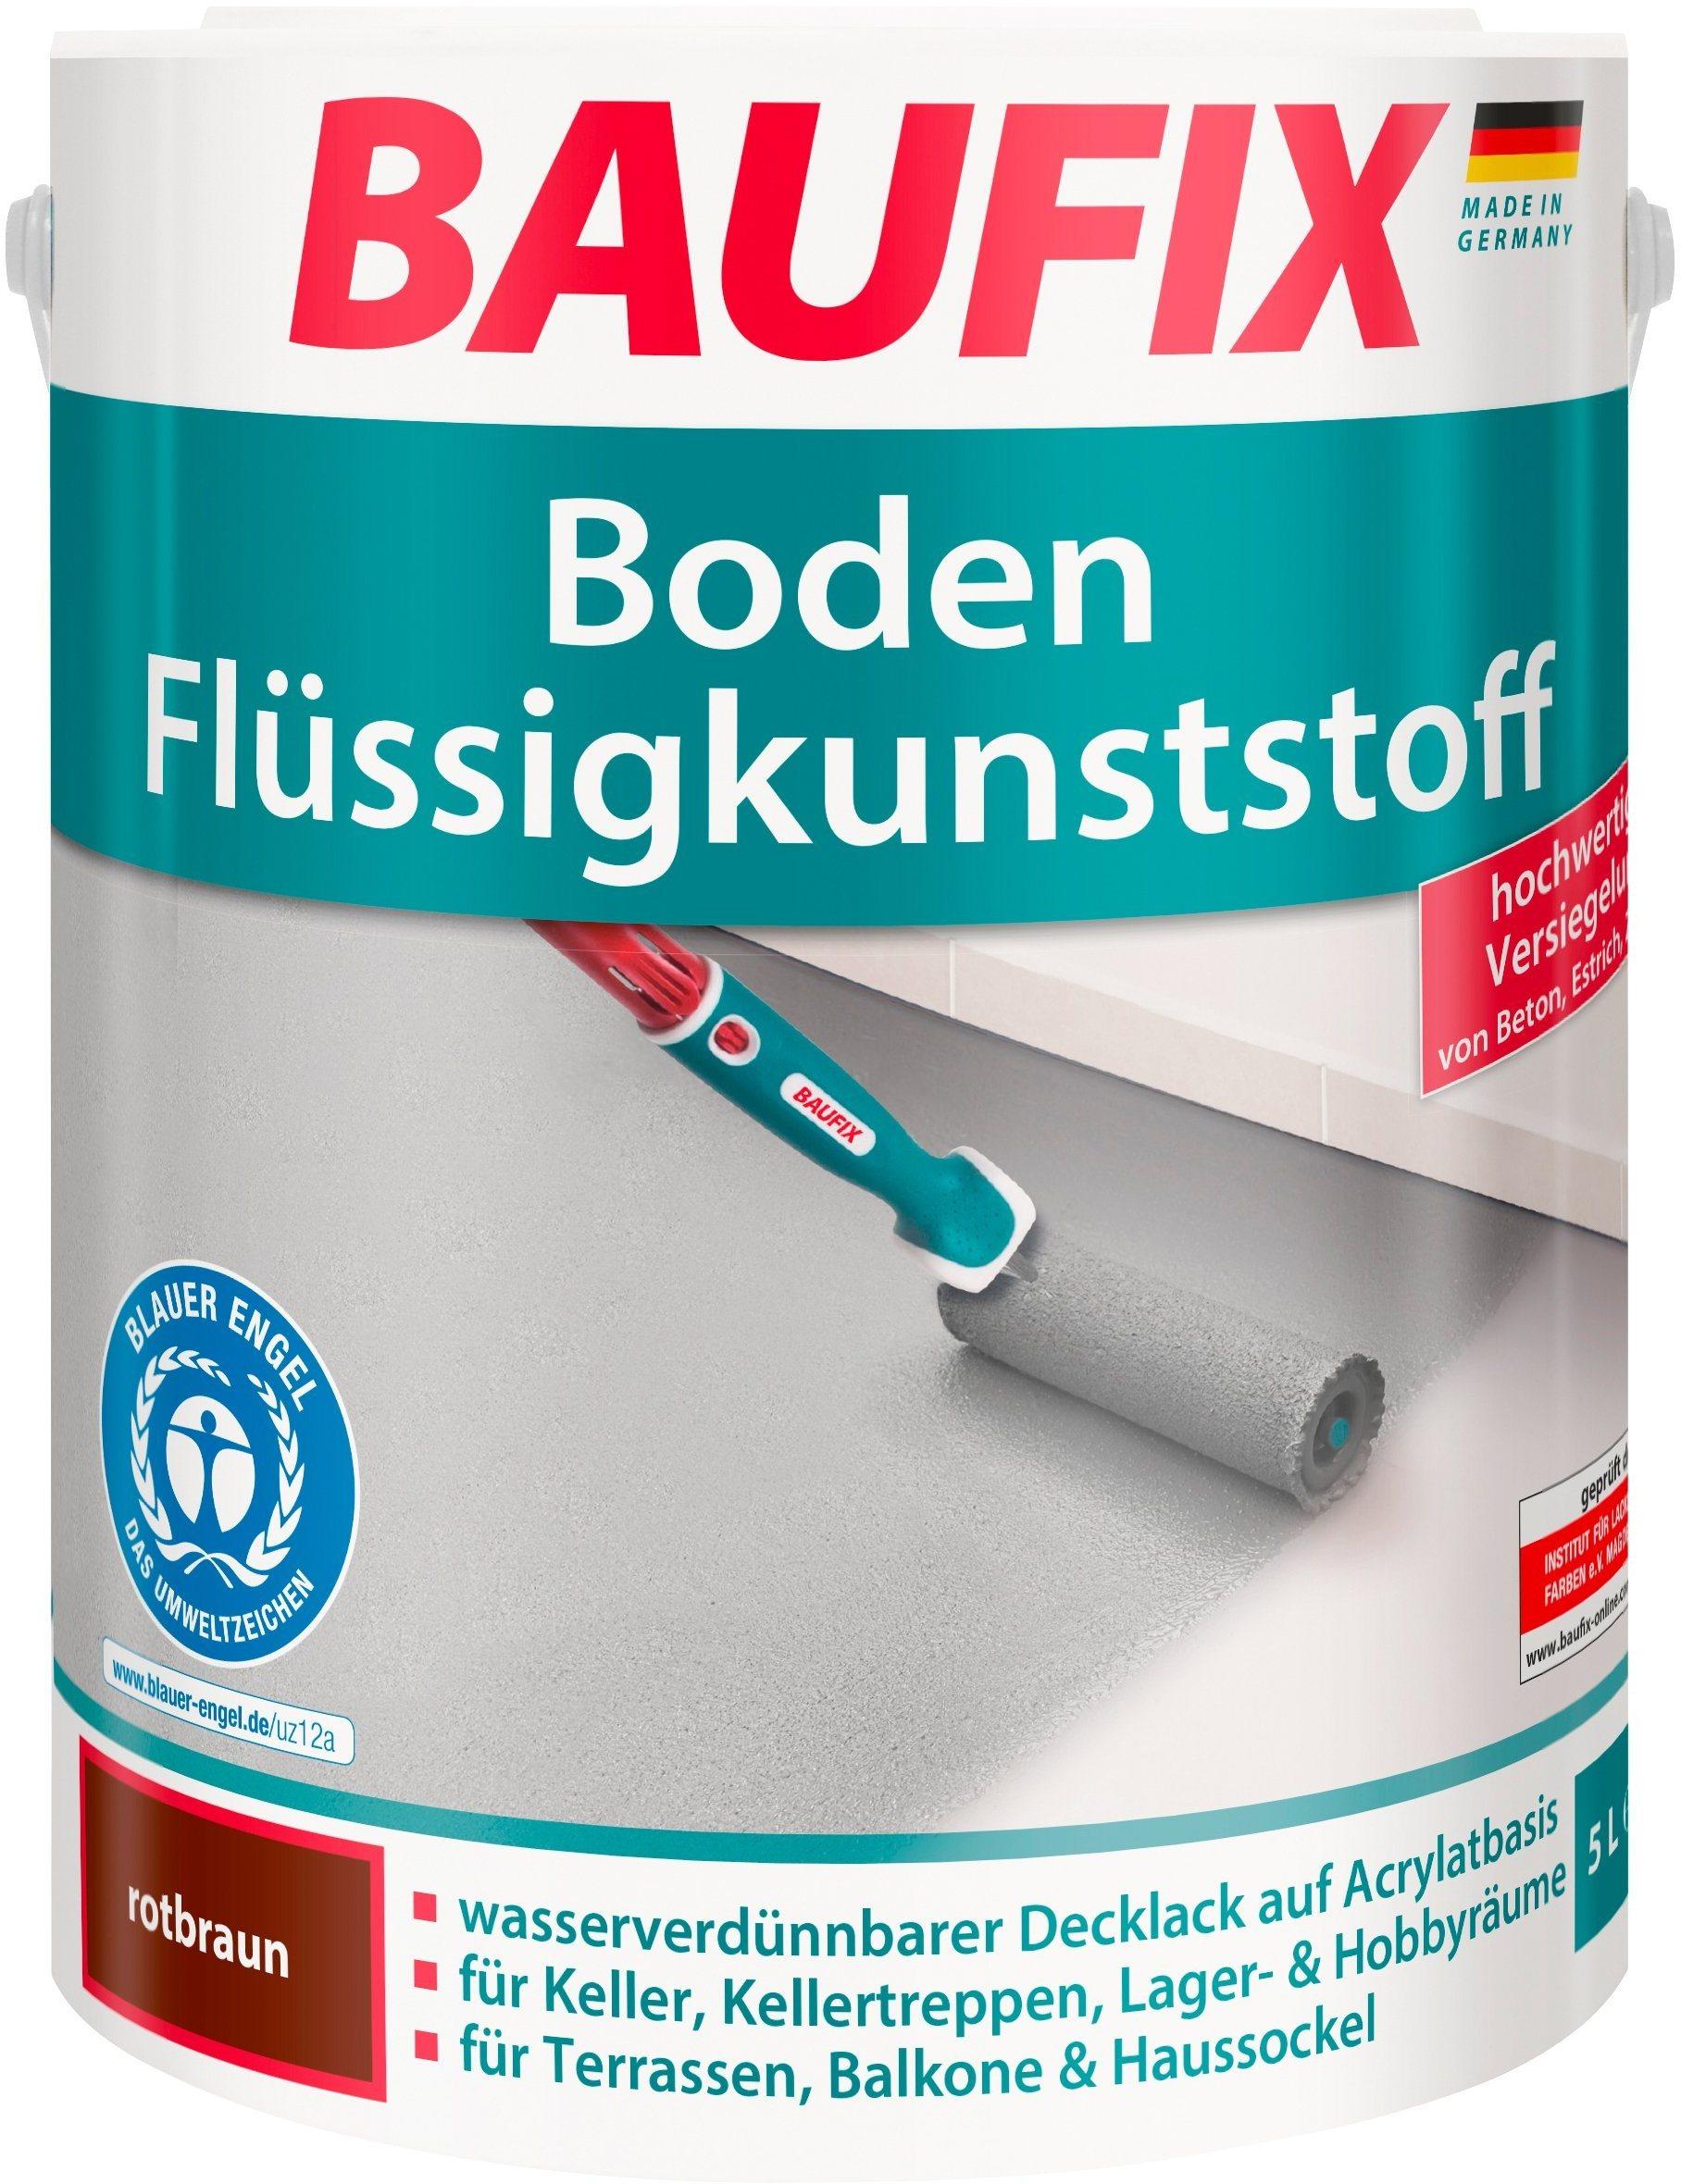 Baufix Boden-Flüssigkunststoff 5 l rotbraun Erfahrungen 5/5 Sternen